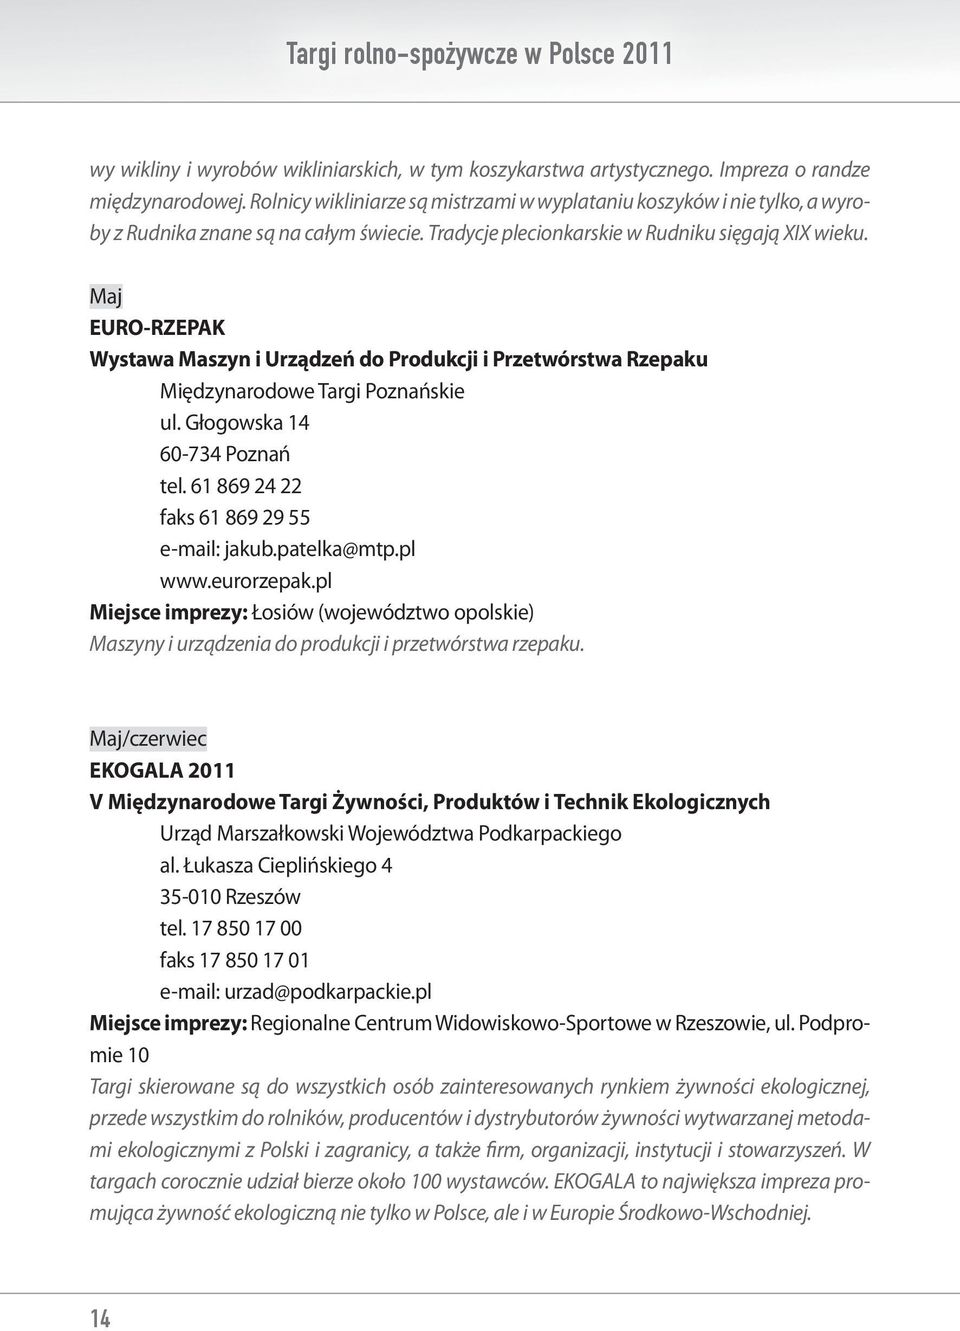 Maj EURO-RZEPAK Wystawa Maszyn i Urządzeń do Produkcji i Przetwórstwa Rzepaku Międzynarodowe Targi Poznańskie ul. Głogowska 14 60-734 Poznań tel. 61 869 24 22 faks 61 869 29 55 e-mail: jakub.